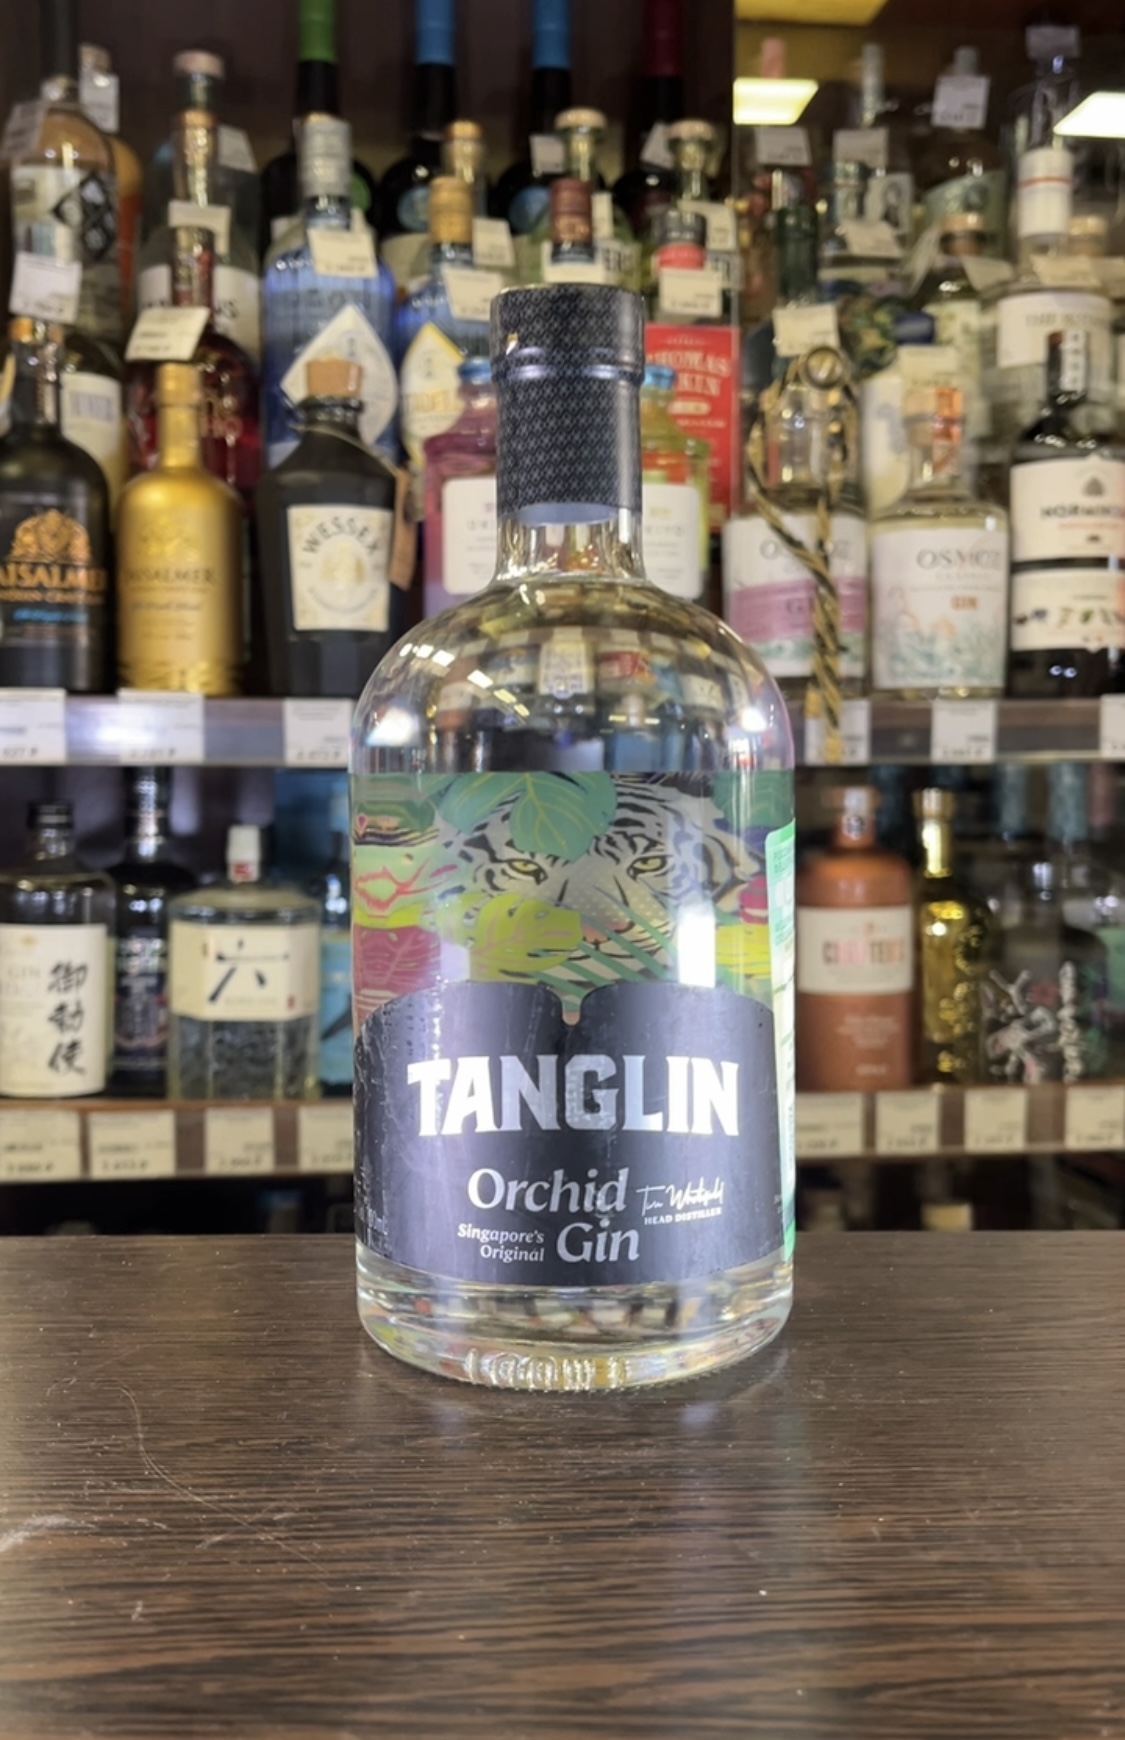 Tanglin Orchid Джин Танглин Орчид 0.7л